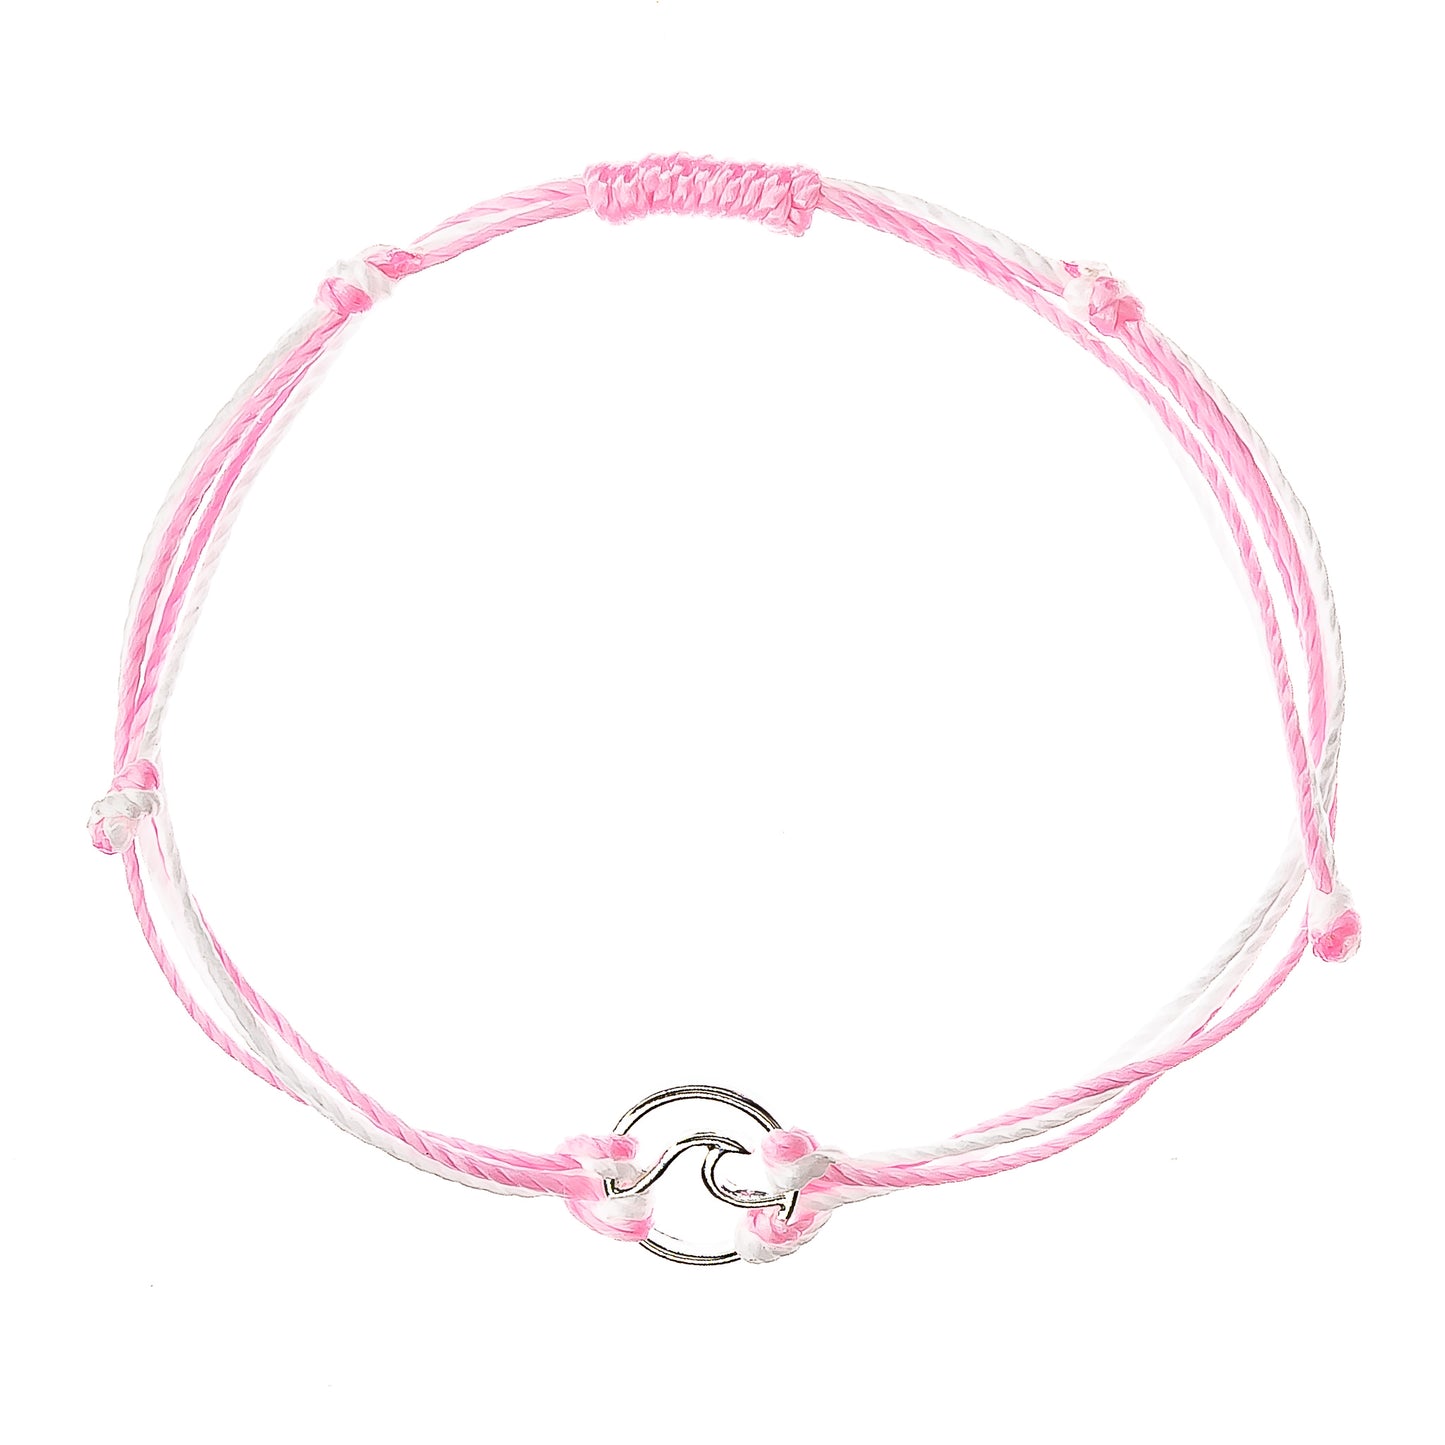 surfer string bracelet, wave charm, pink